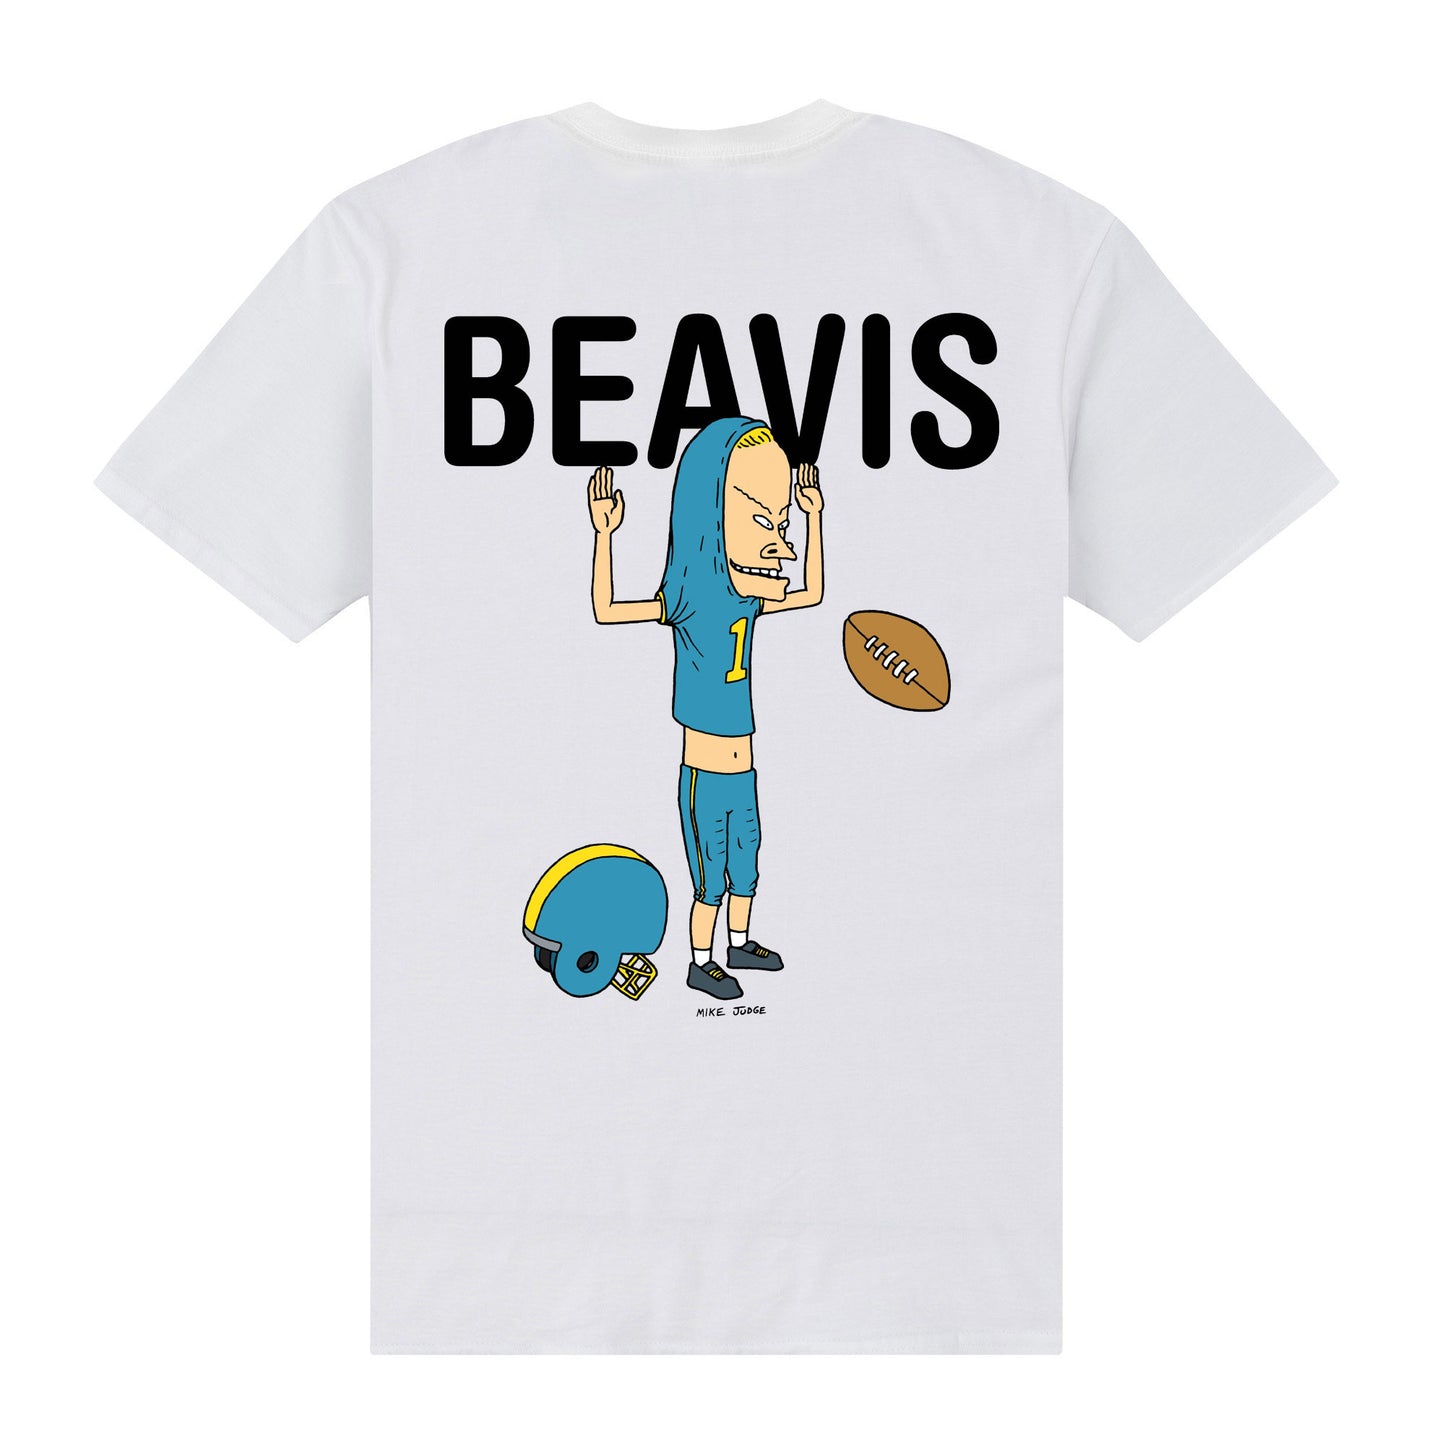 Beavis and Butthead 'Beavis' T-Shirt